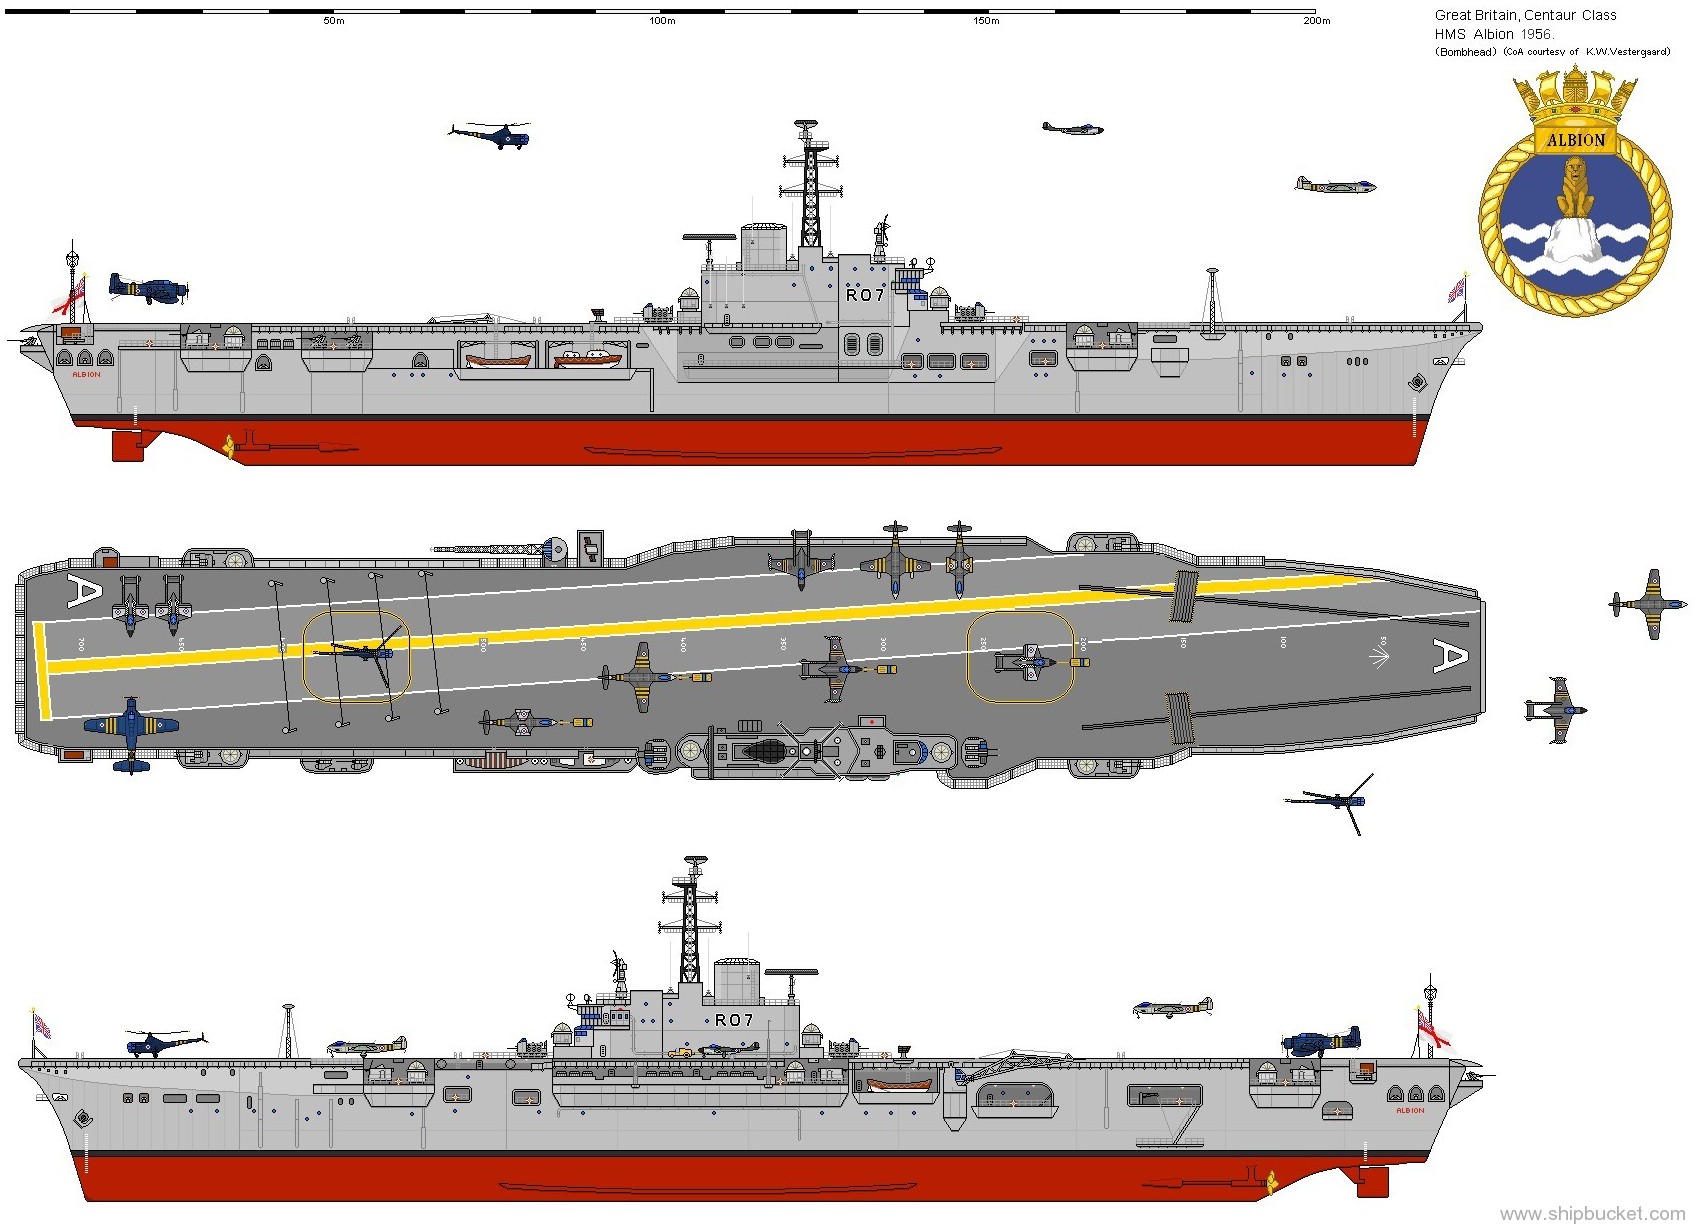 r-07 hms albion centaur class aircraft carrier royal navy 02